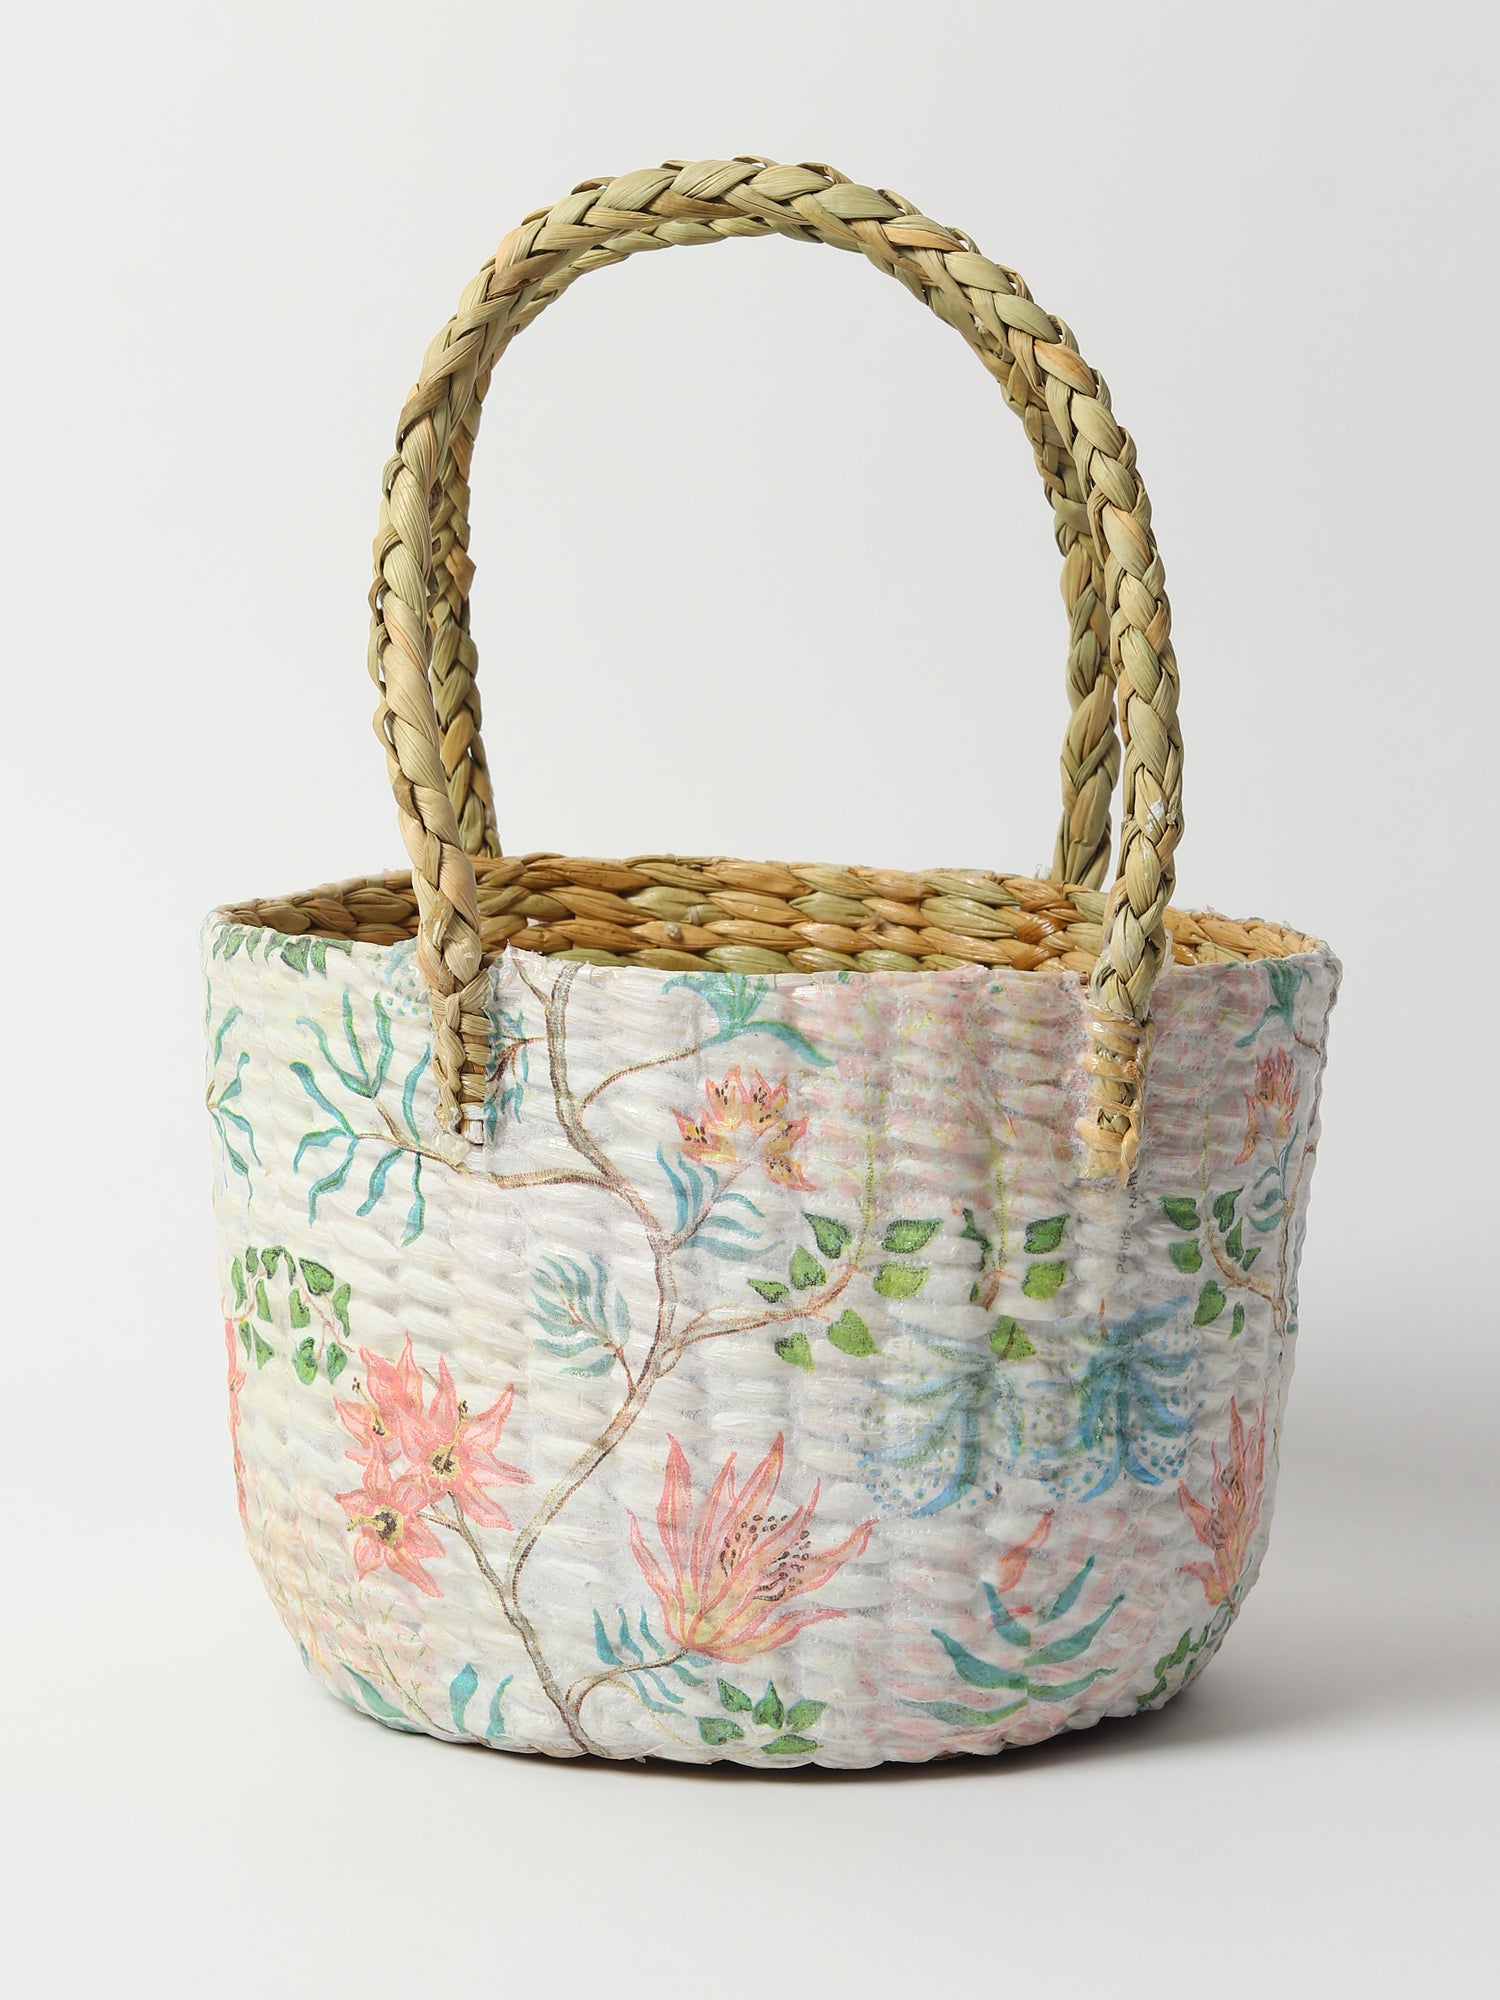 Seagrass Hamper Basket 